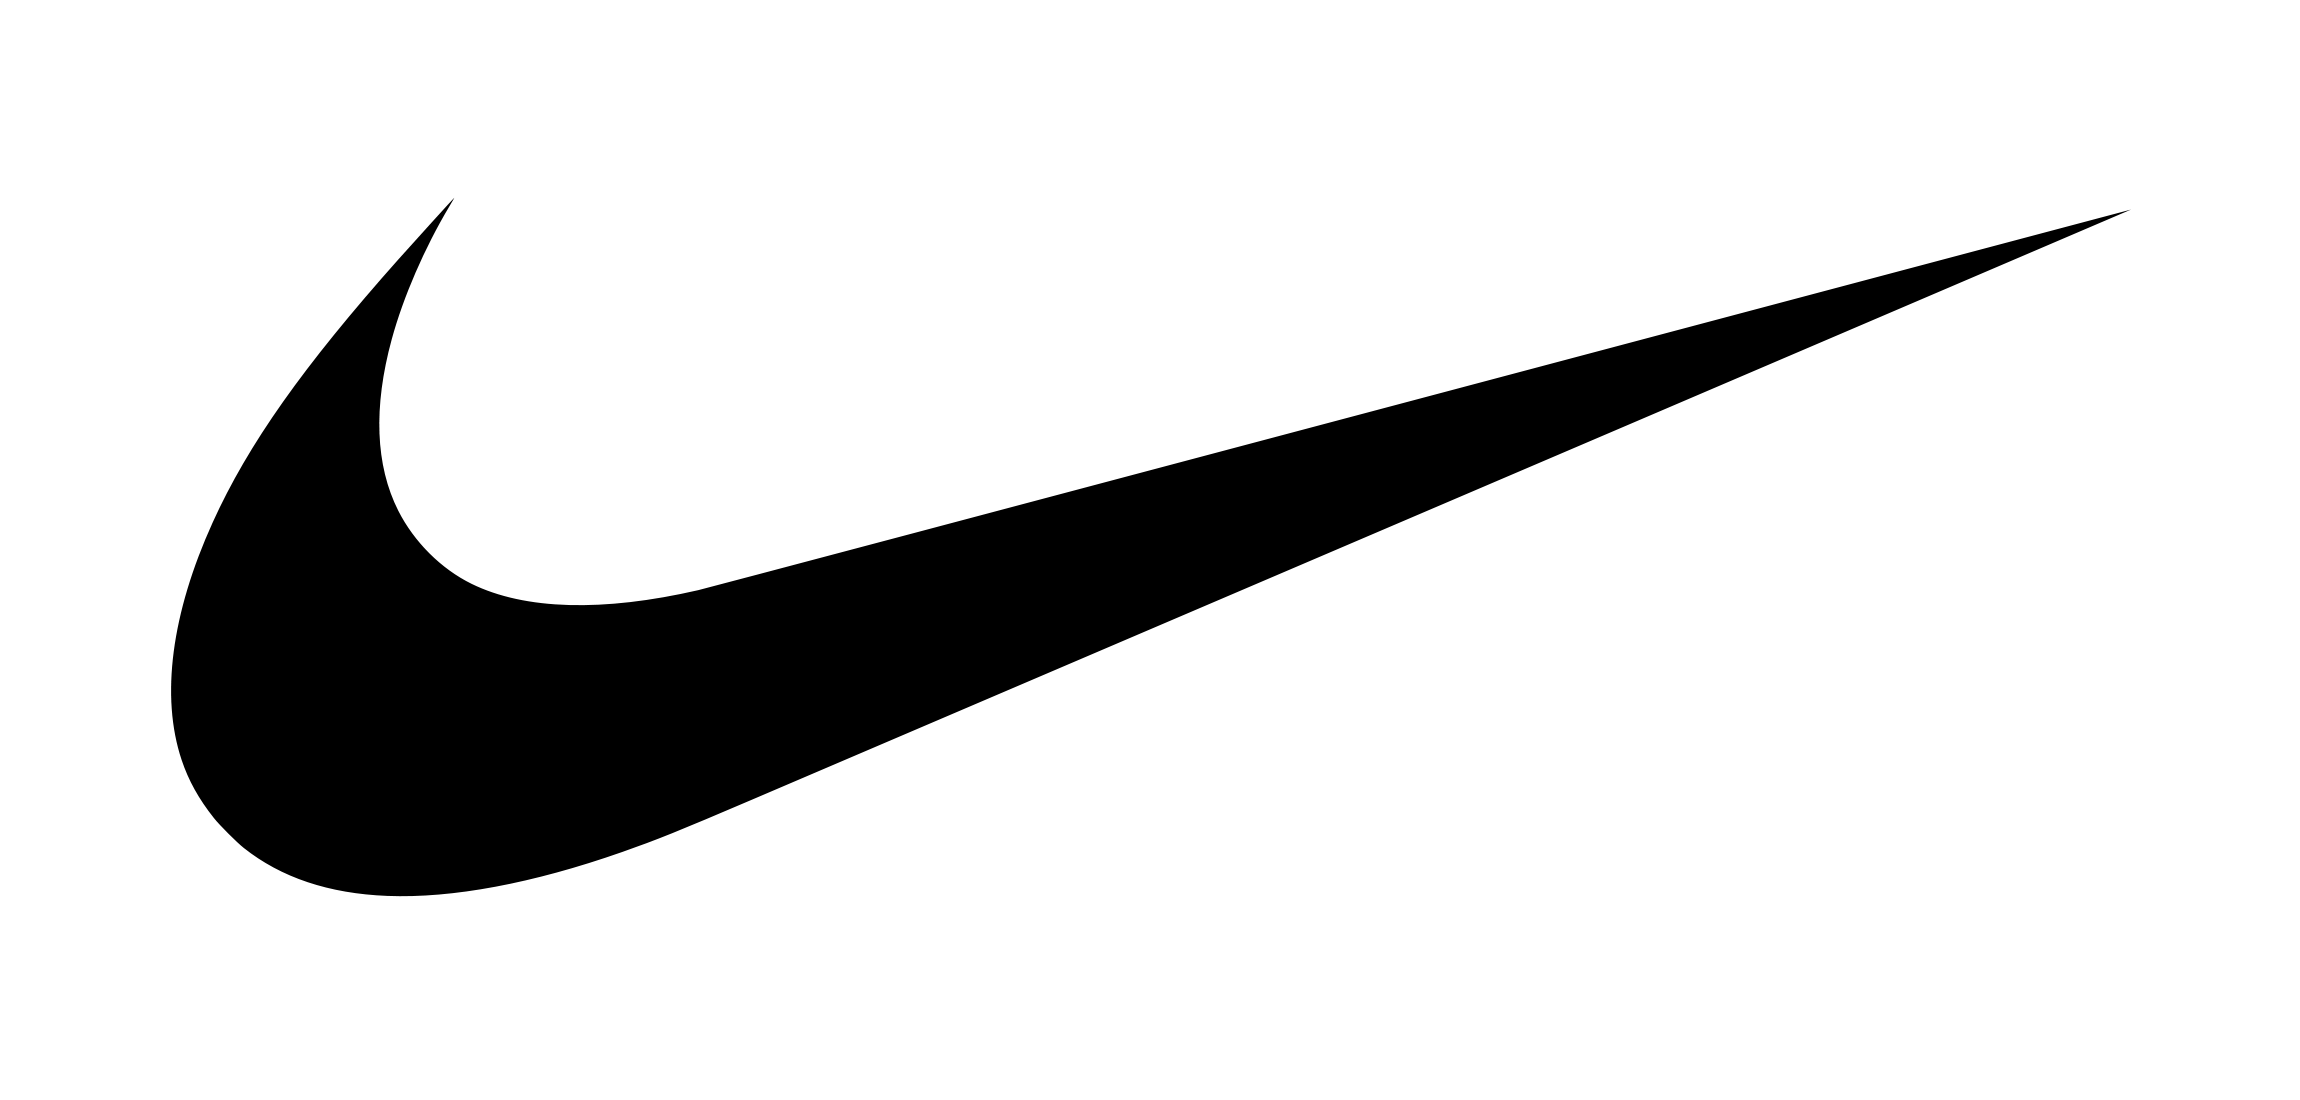 White Nike Logo - Nike Logo PNG Image Free Download Logo Image Logo Png